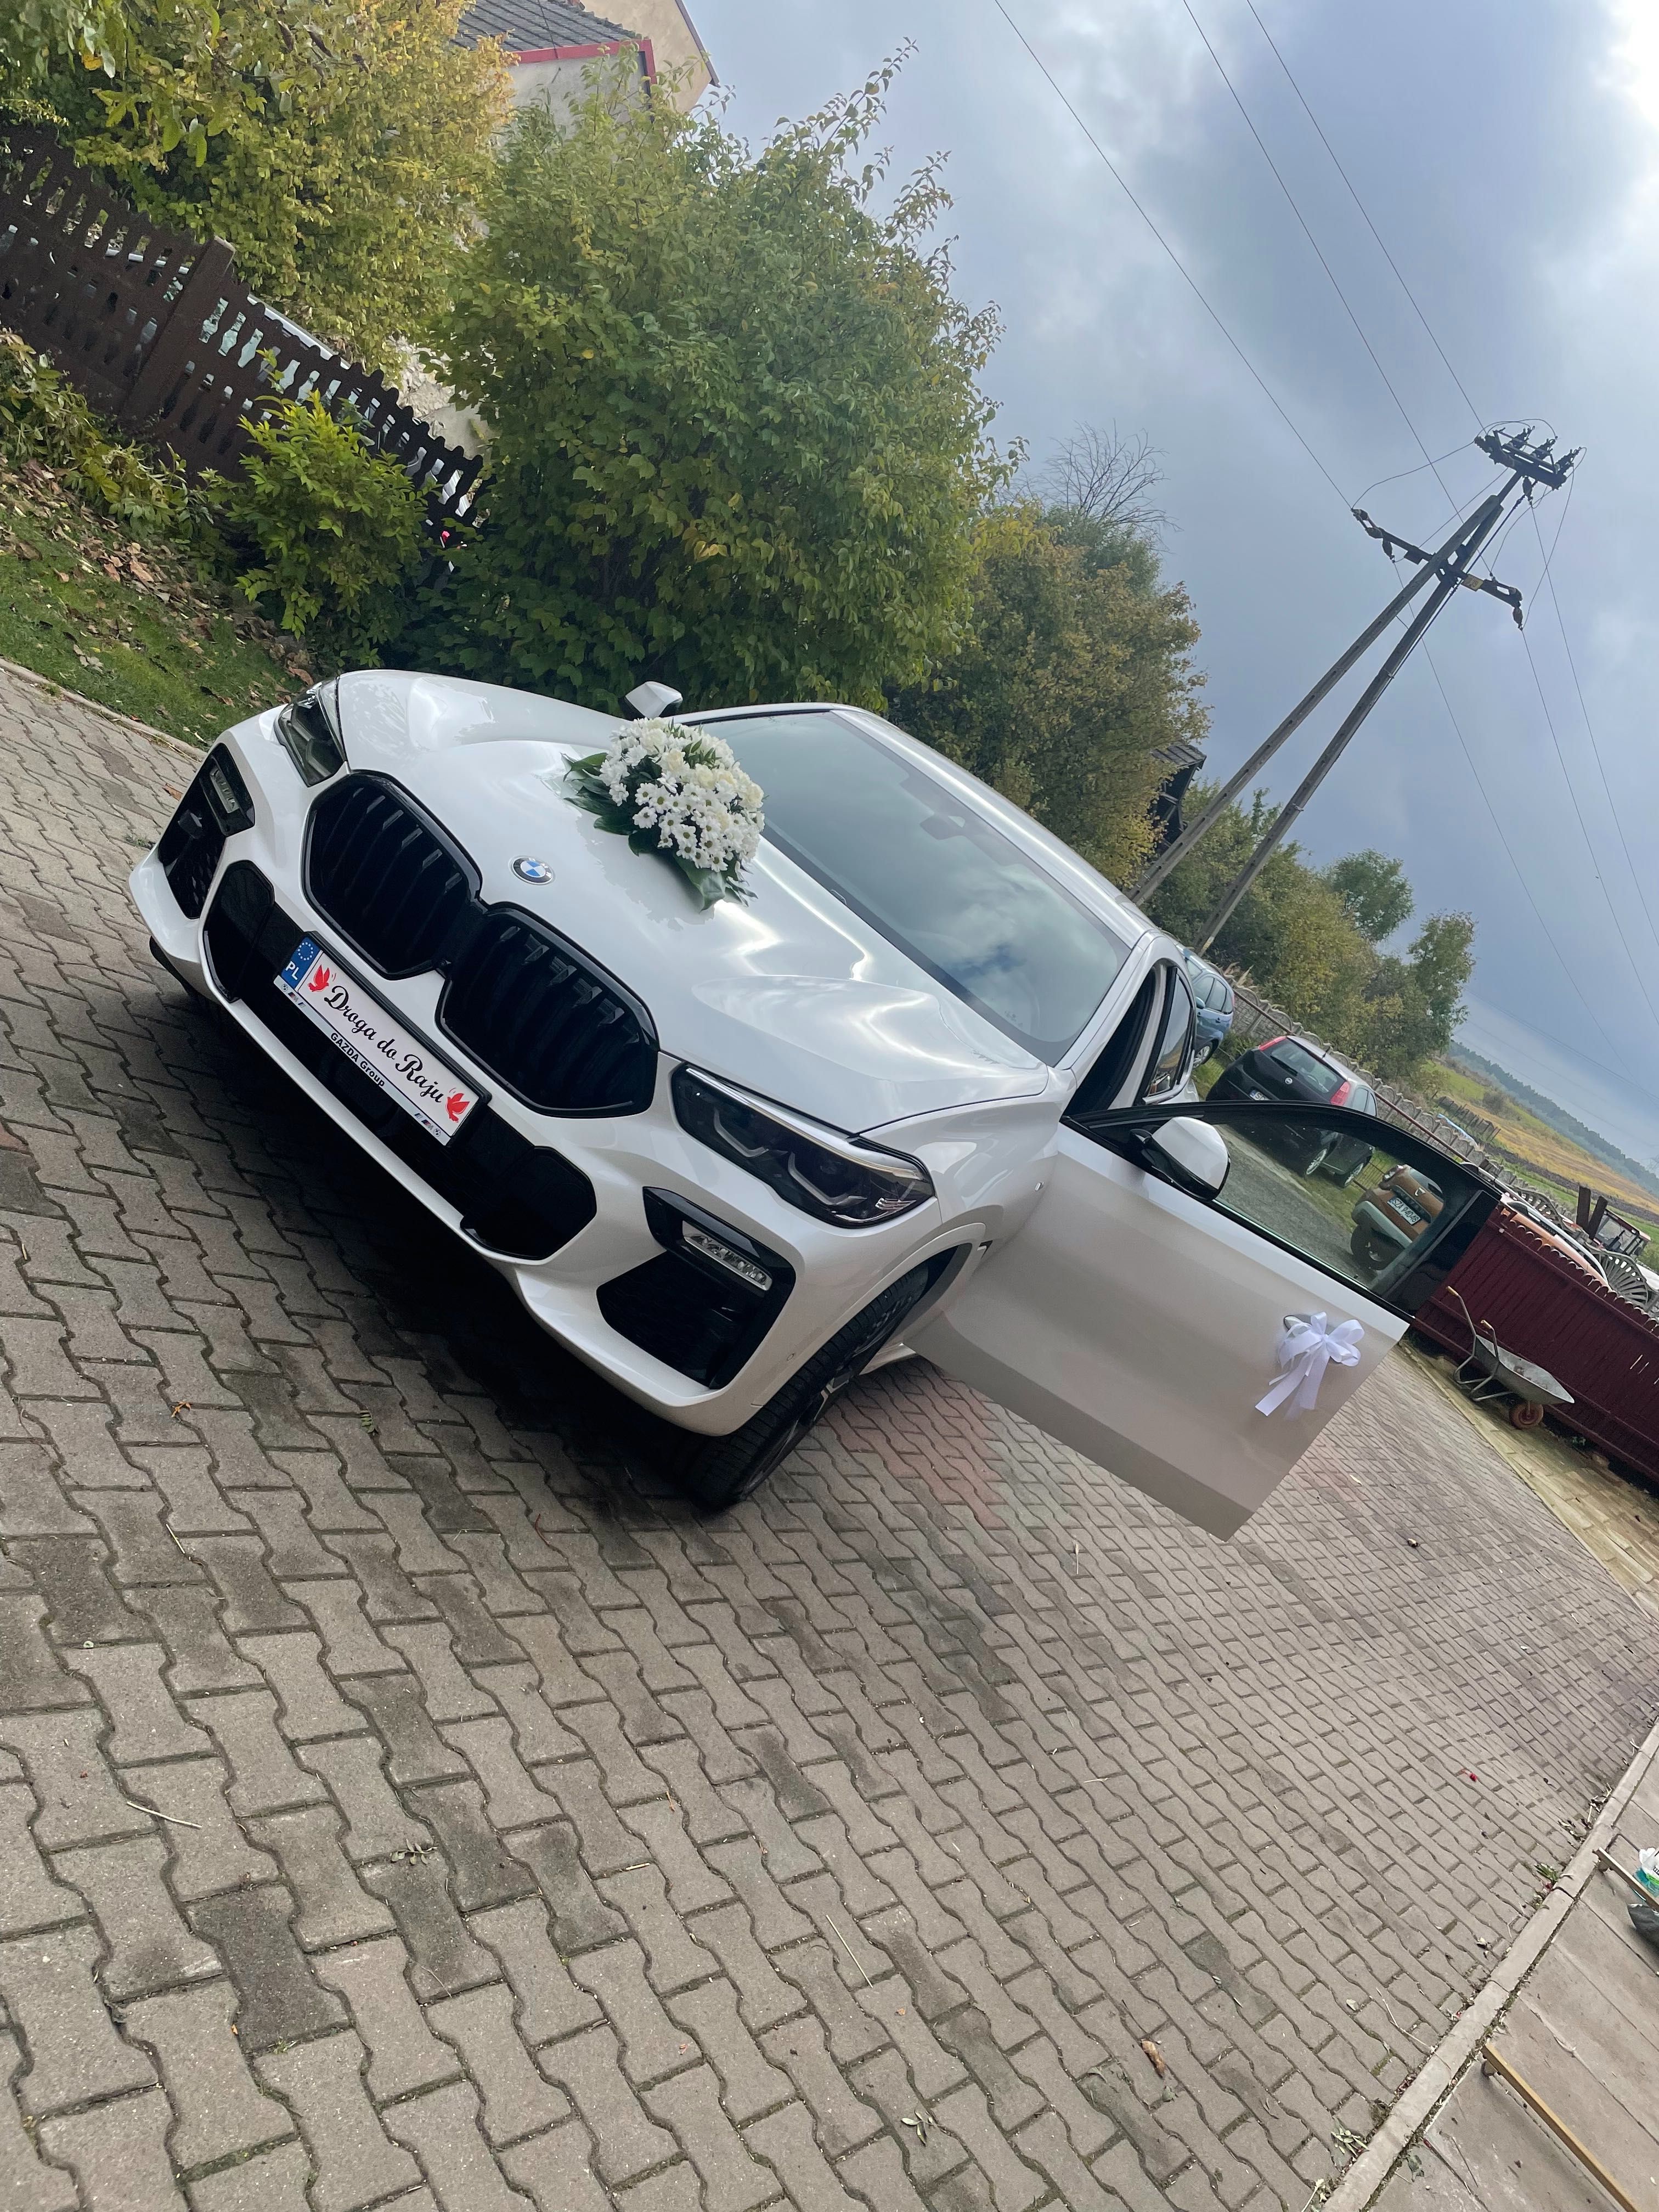 Auto do ślubu ! Nowe BMW X6 ! Biała perła- Promocja !!!